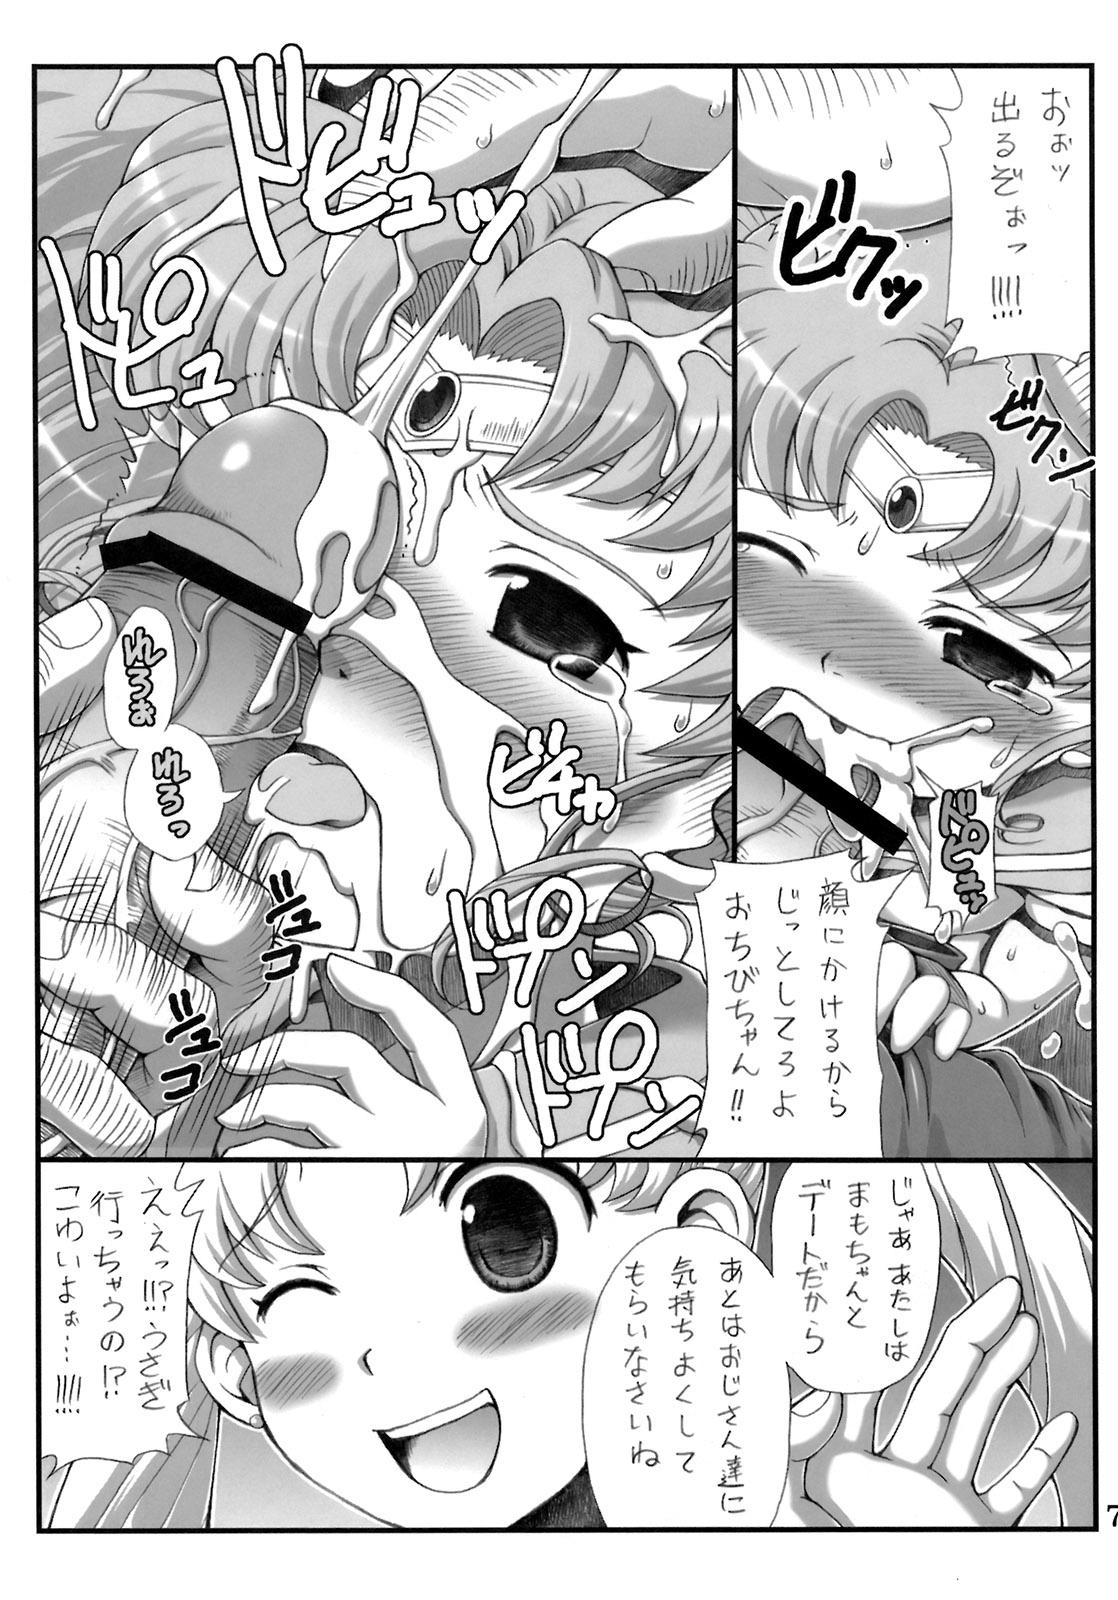 Sister Lovely Battle Suit HALF & HALF - Sailor moon Sakura taisen Tats - Page 6